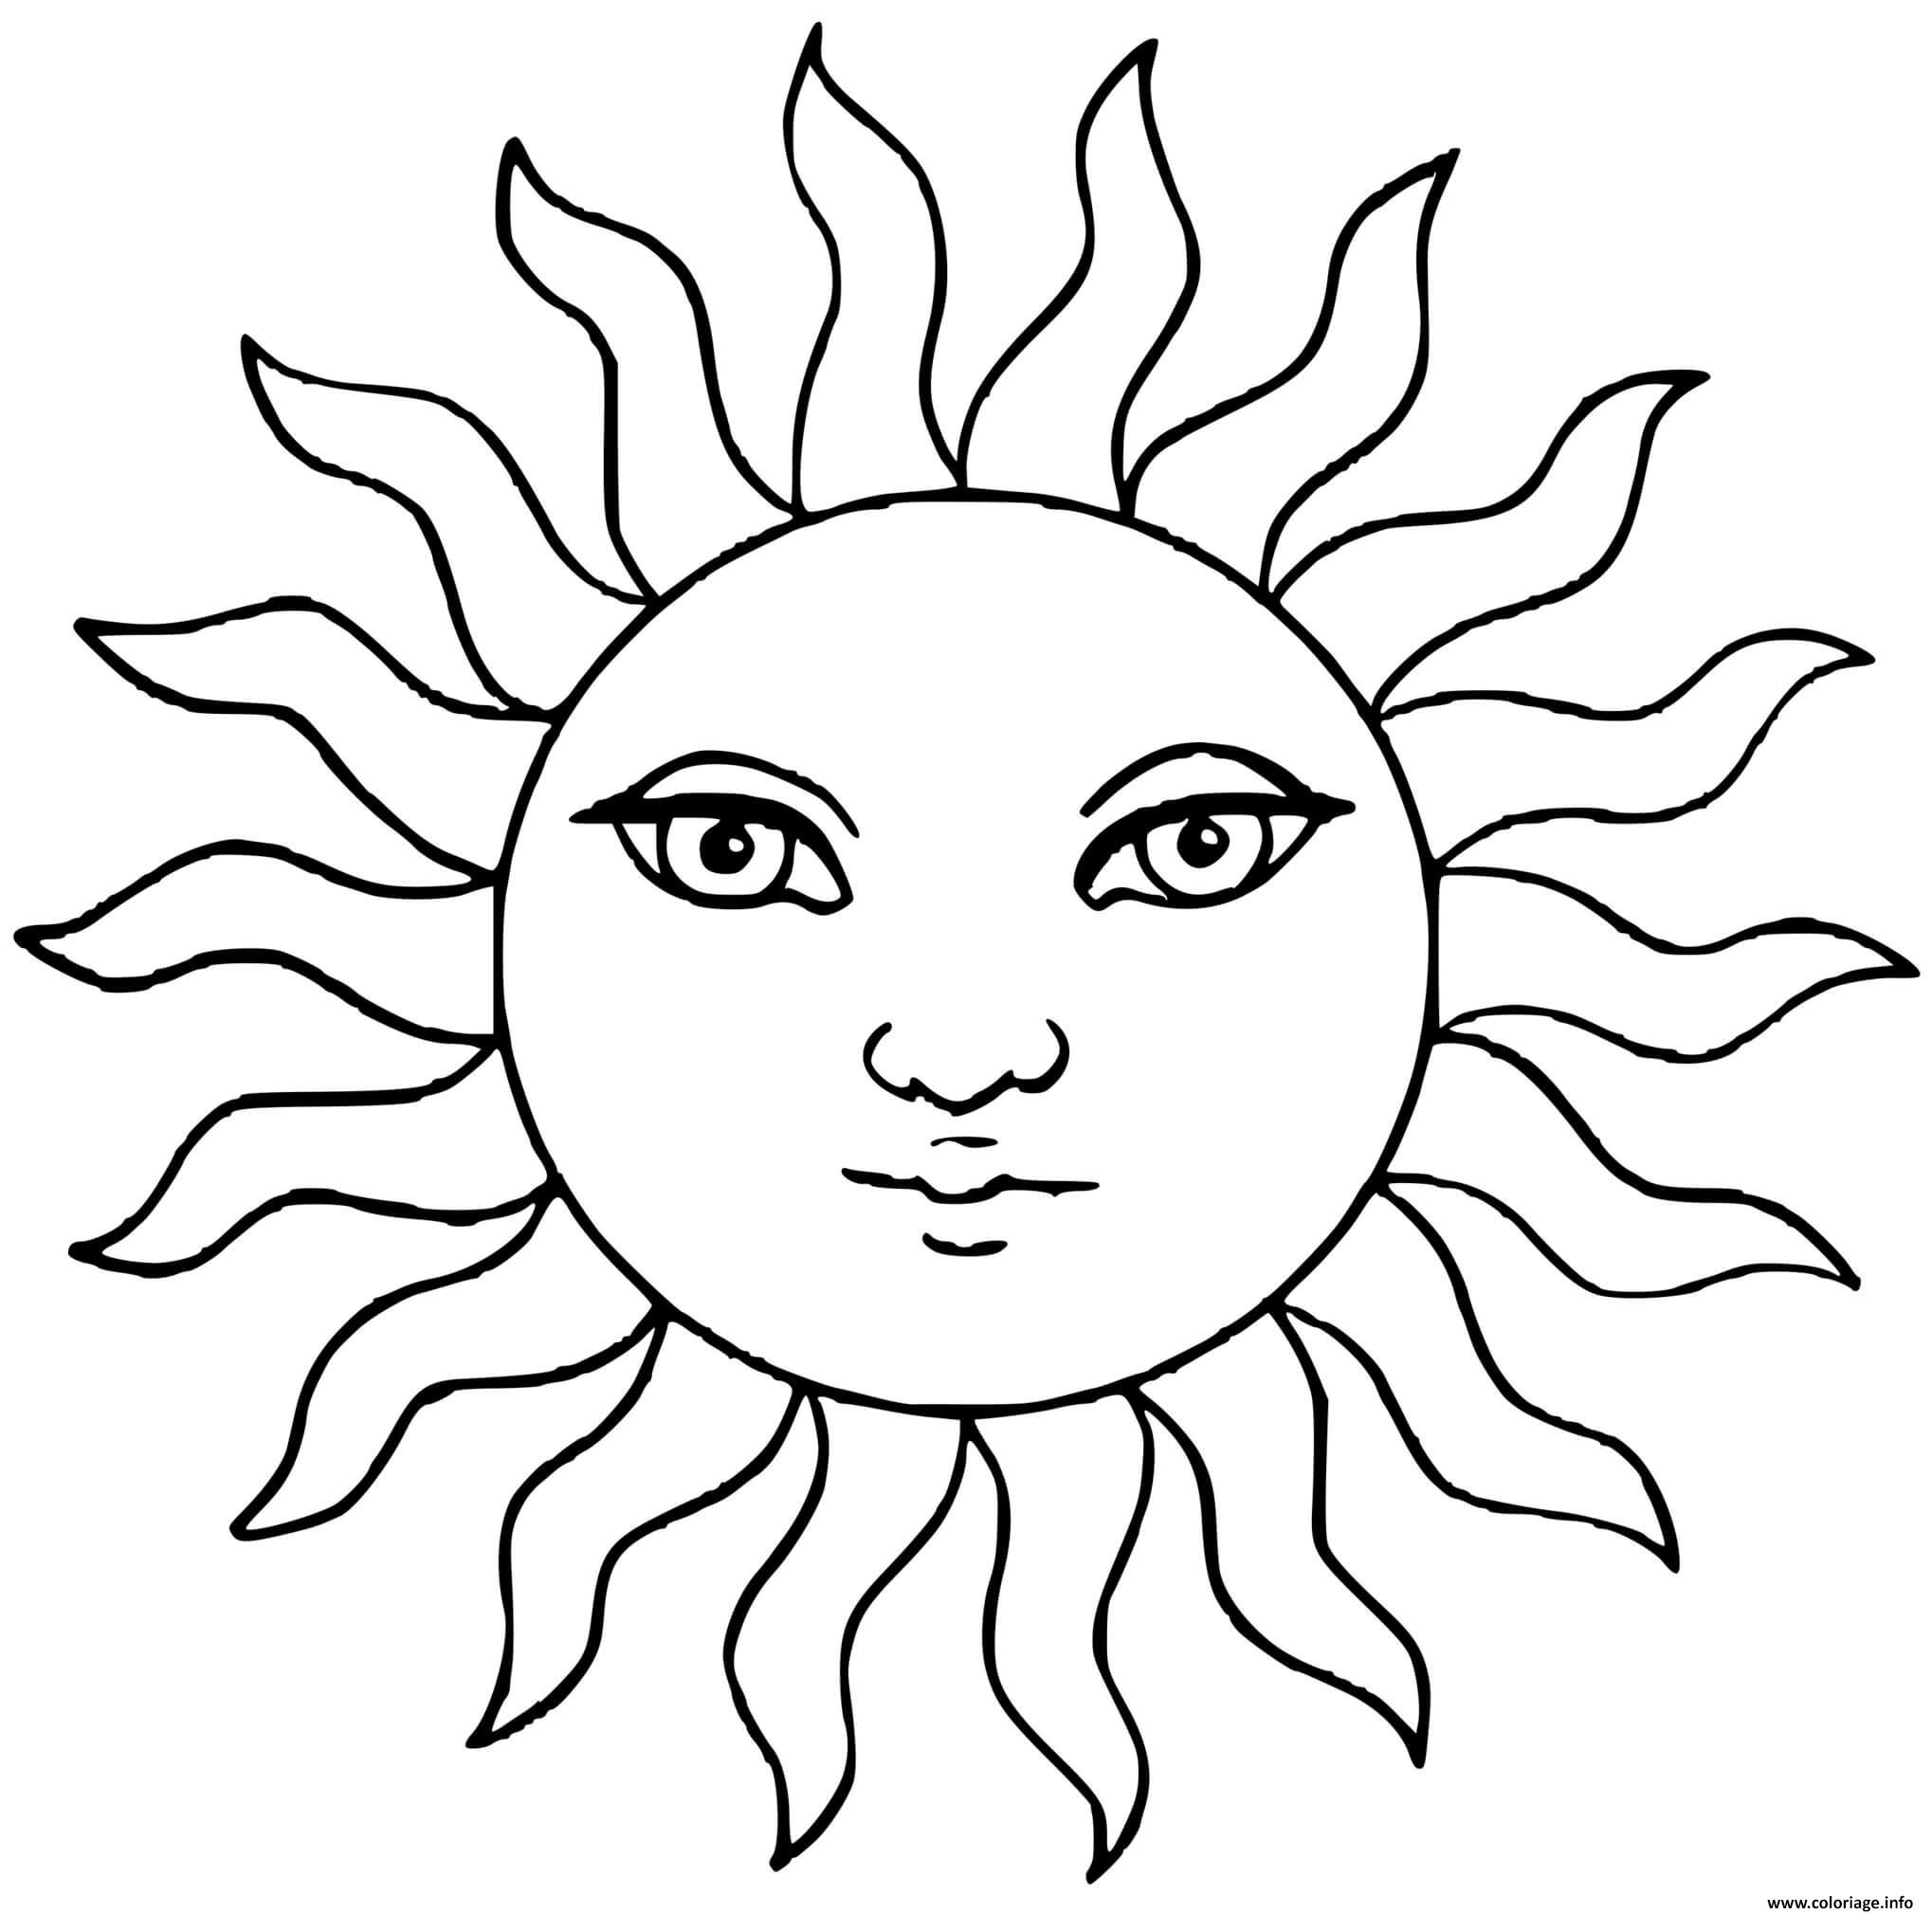 Dessin soleil circle du soleil Coloriage Gratuit à Imprimer